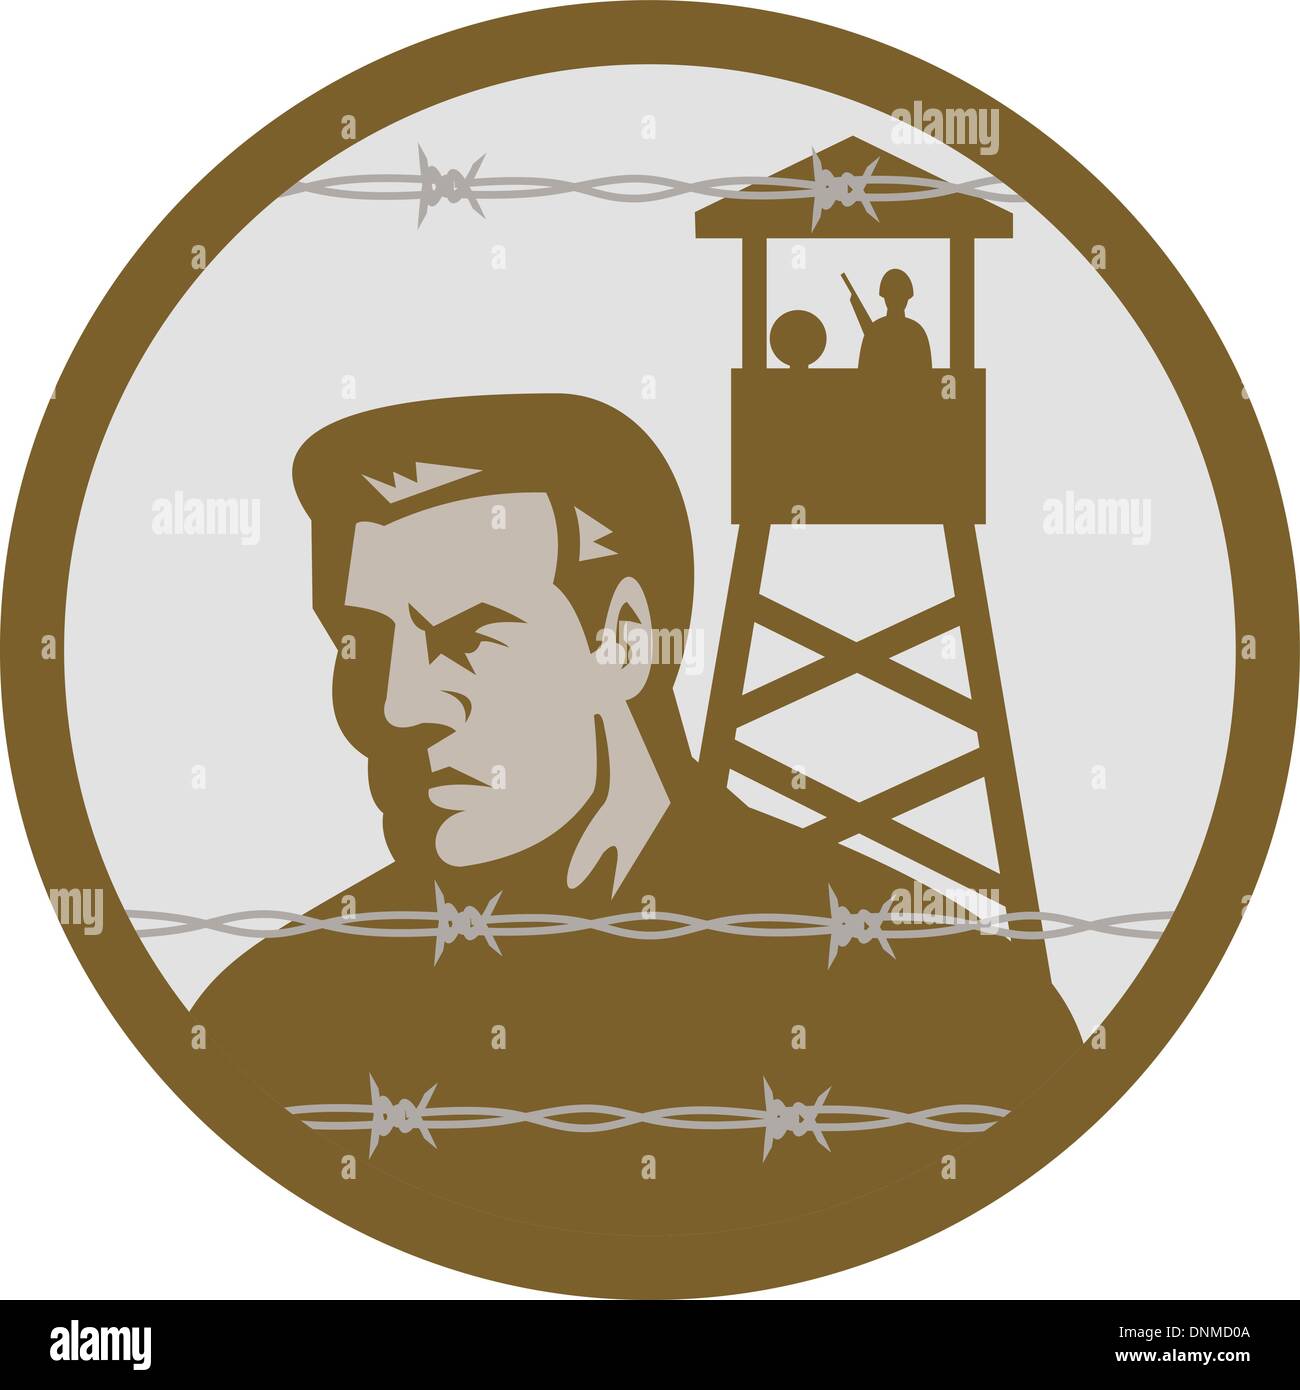 Illustrazione di un prigioniero di guerra in un campo di concentramento con torre di guardia in background e filo spinato in primo piano. Illustrazione Vettoriale